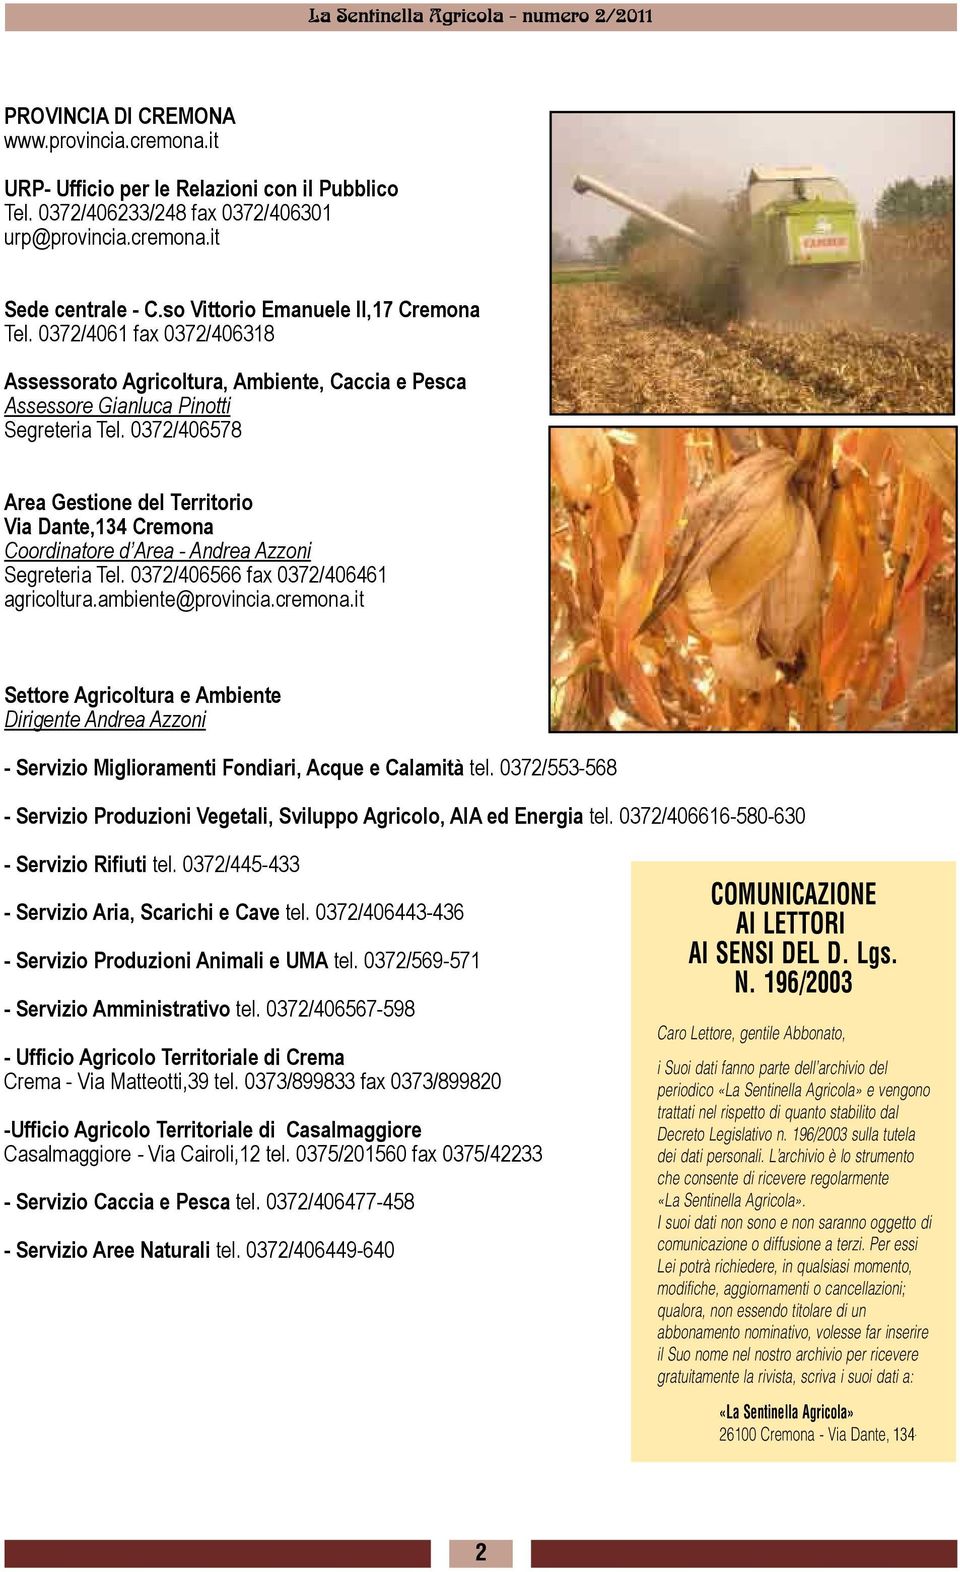 0372/406578 Area Gestione del Territorio Via Dante,134 Cremona Coordinatore d Area - Andrea Azzoni Segreteria Tel. 0372/406566 fax 0372/406461 agricoltura.ambiente@provincia.cremona.